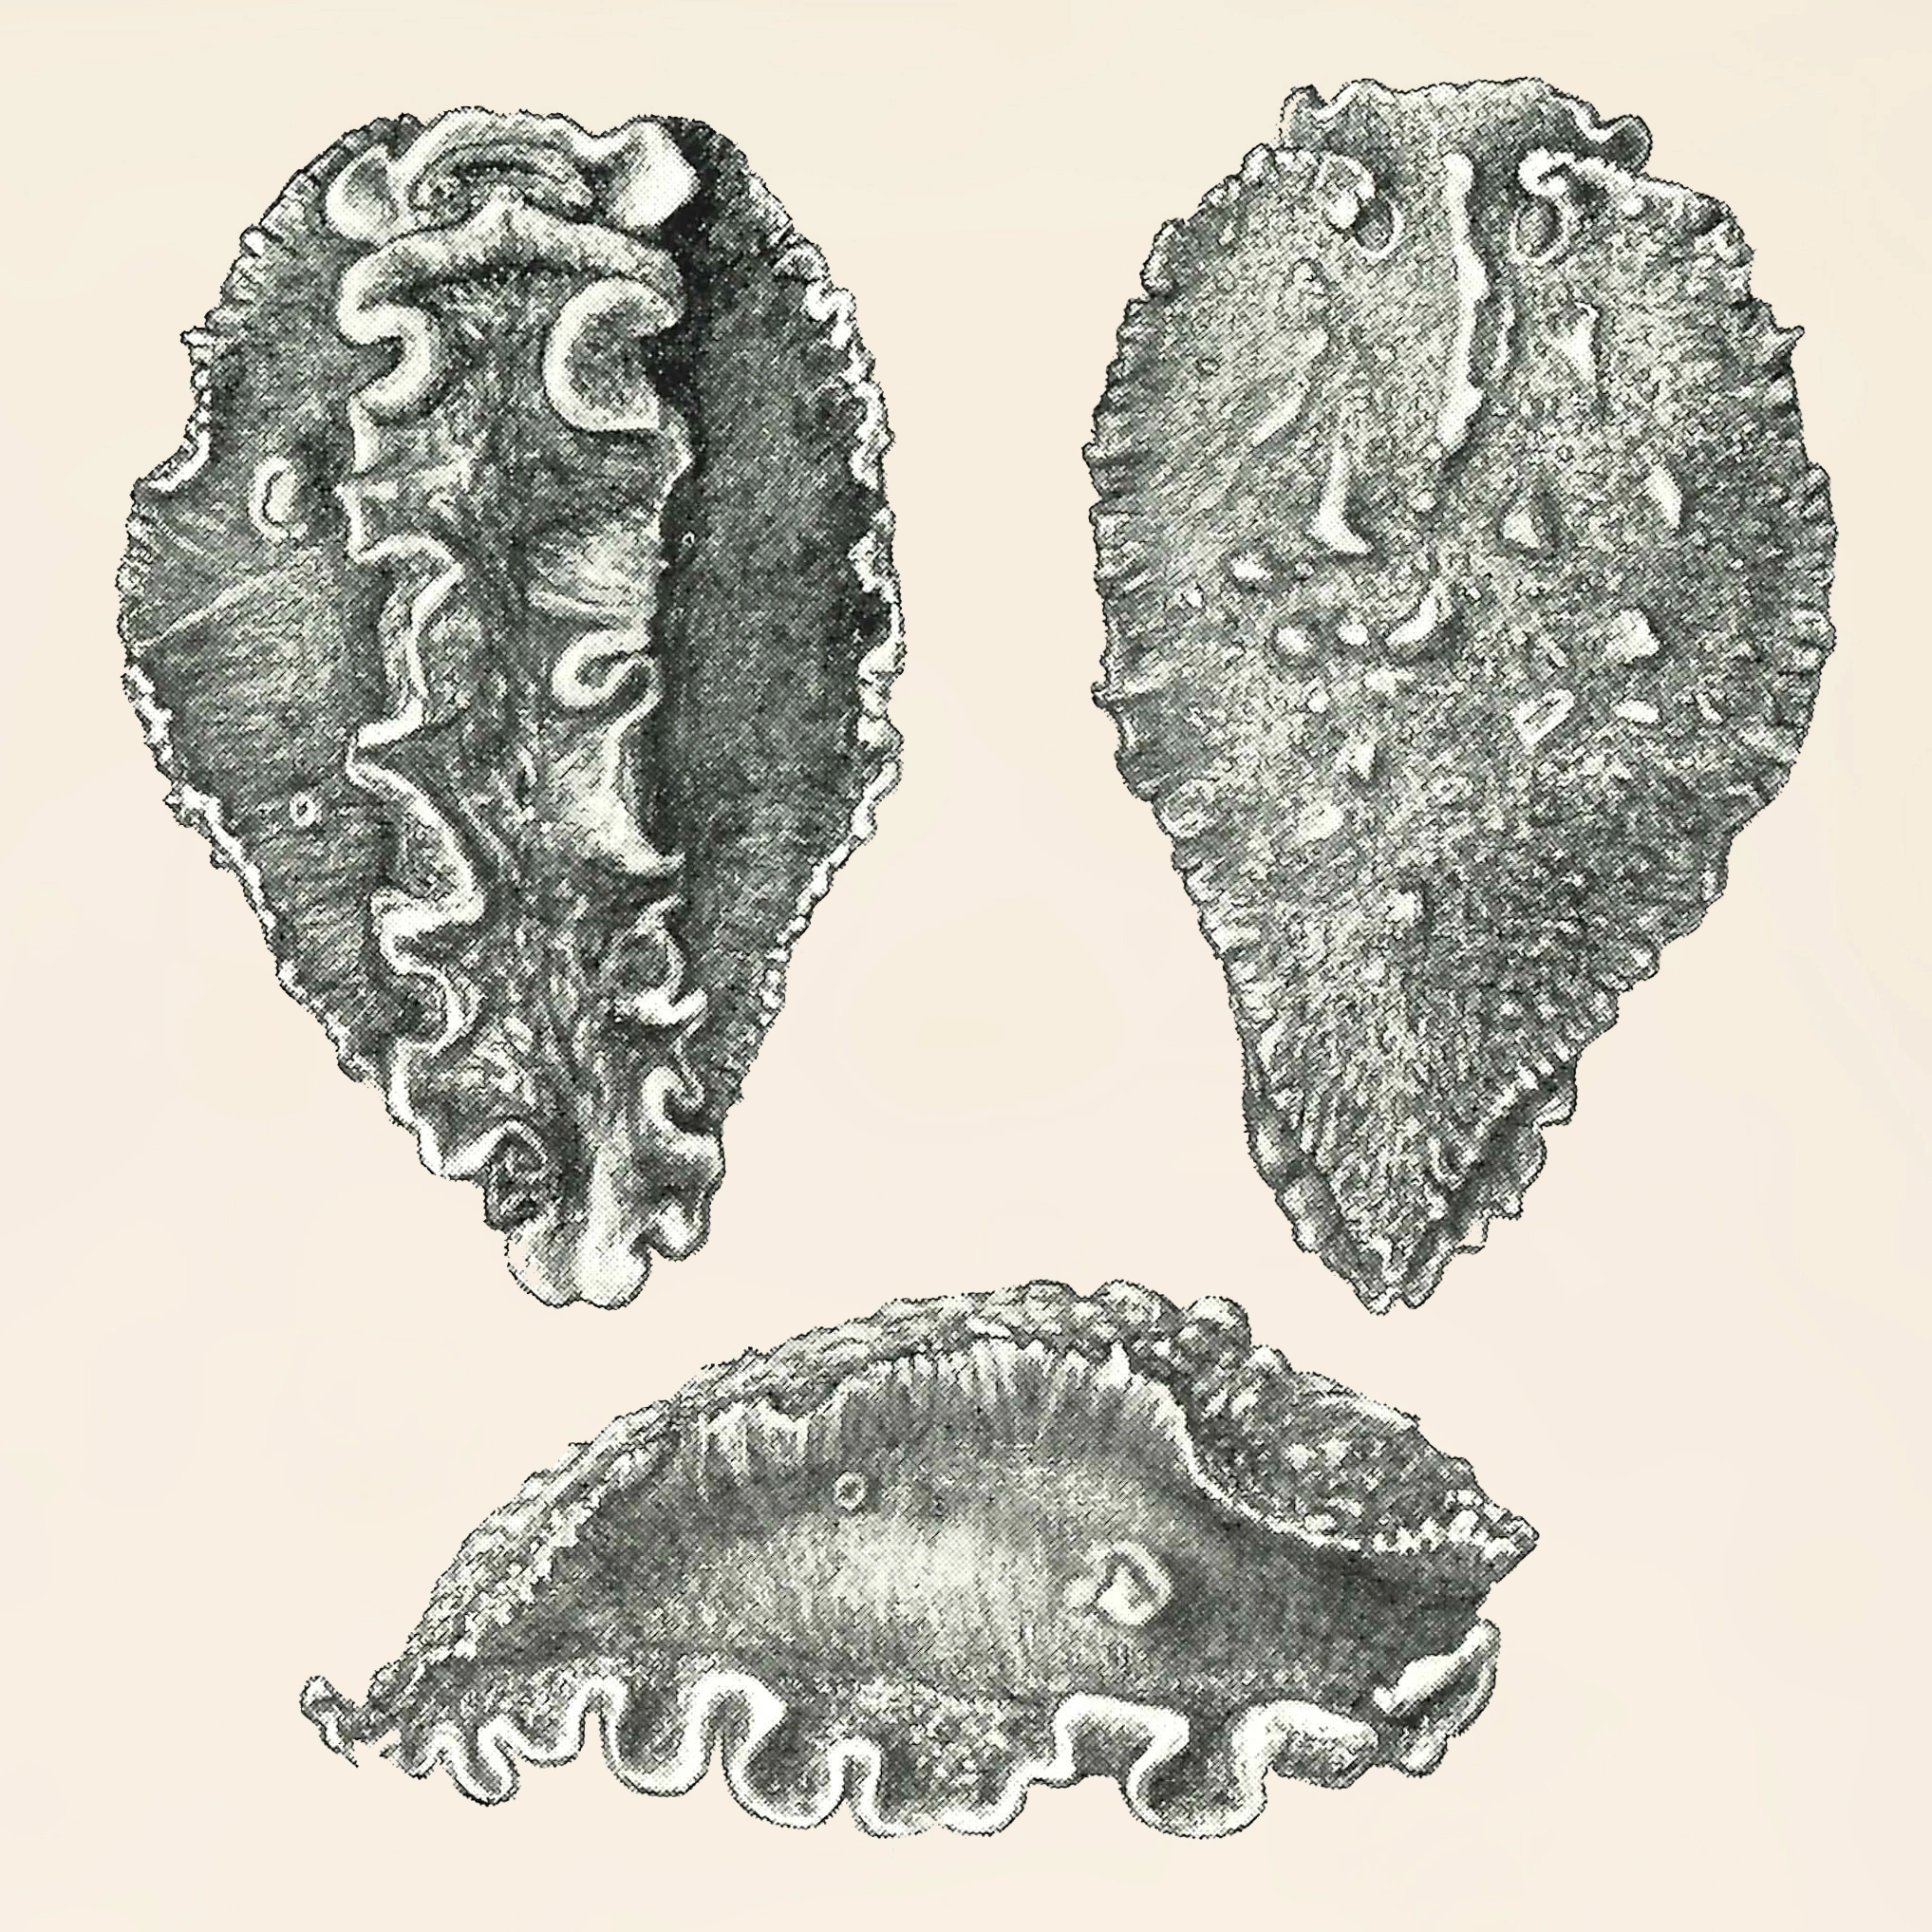 Nakensnegler: Heterodoris robusta.